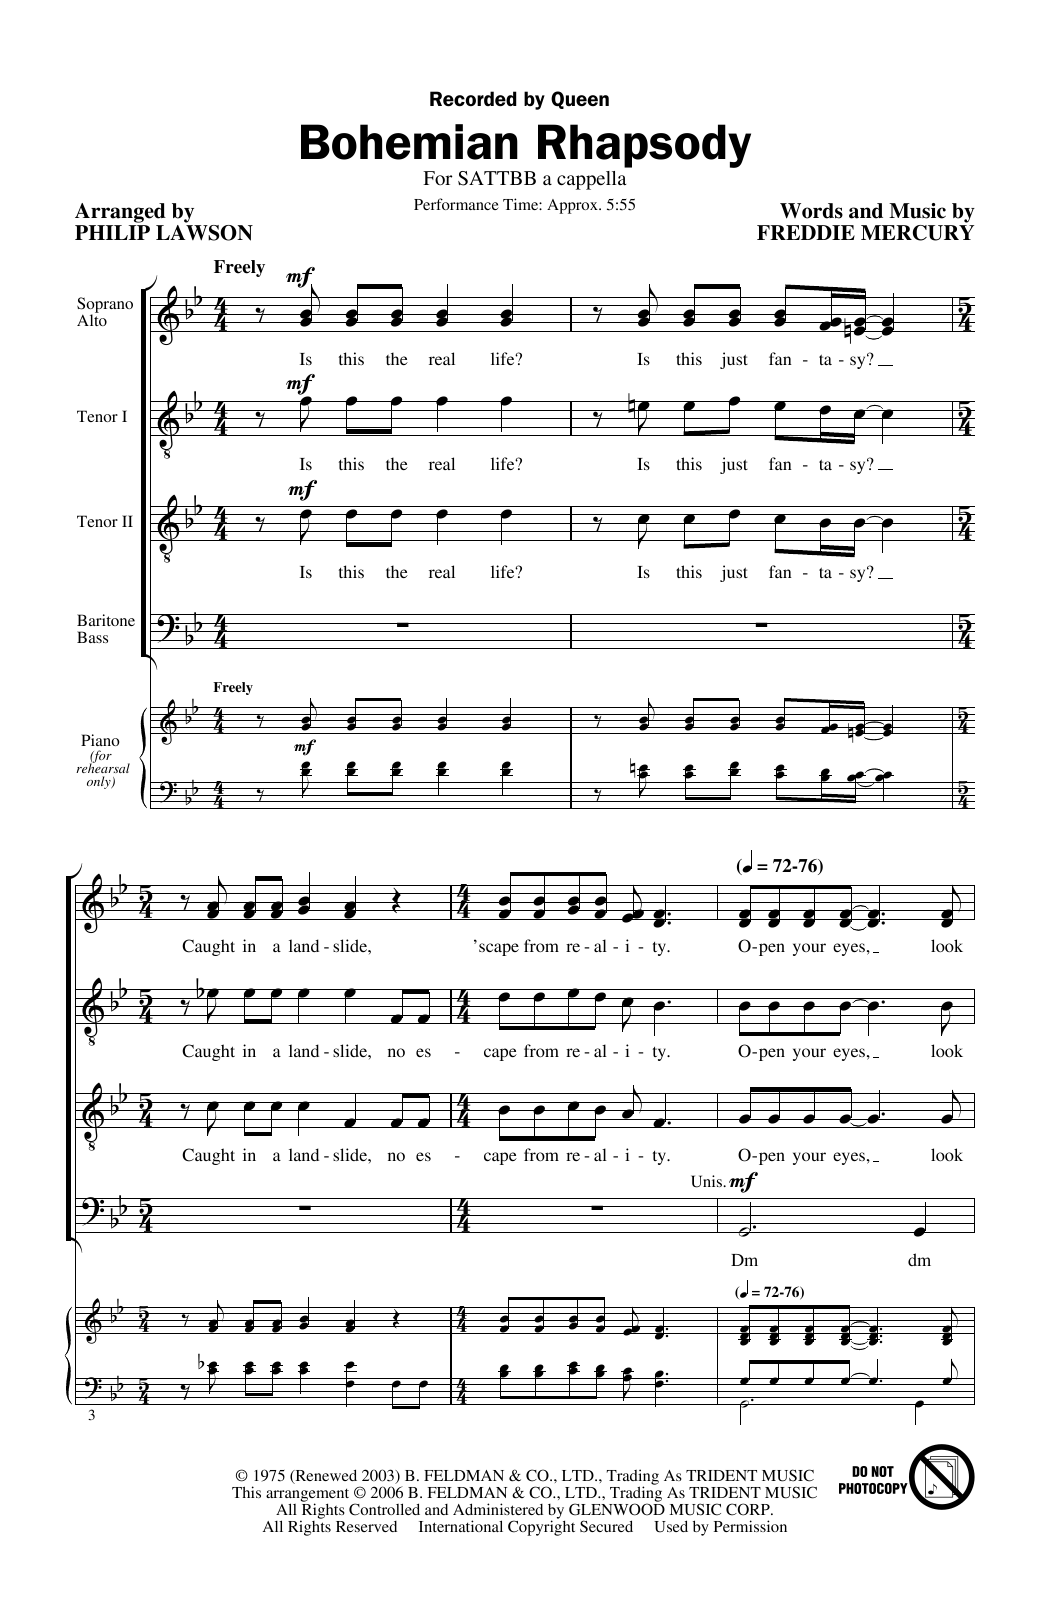 Queen Bohemian Rhapsody (arr. Philip Lawson) sheet music notes and chords arranged for SATTBB Choir